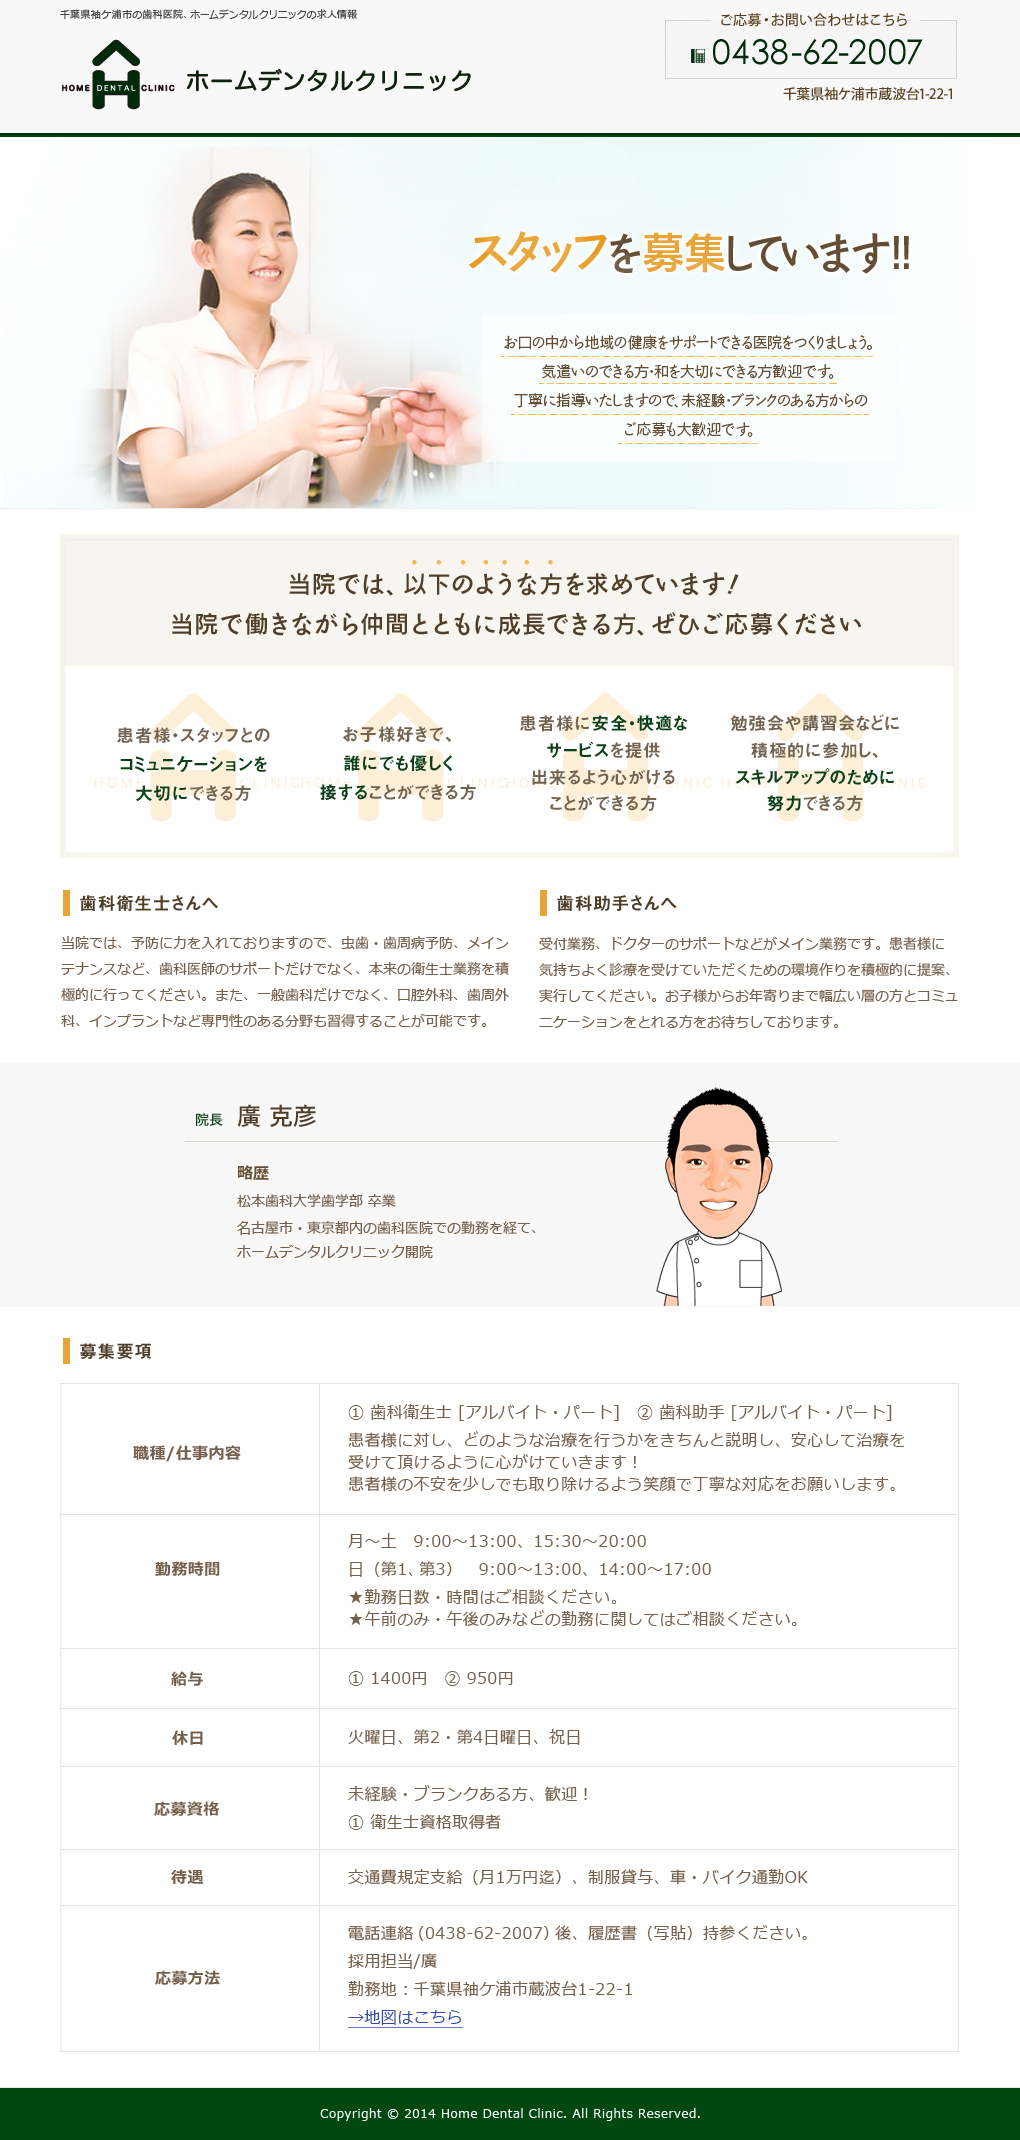 千葉県袖ケ浦市の歯医者、ホームデンタルクリニックではオープニングスタッフを募集しています